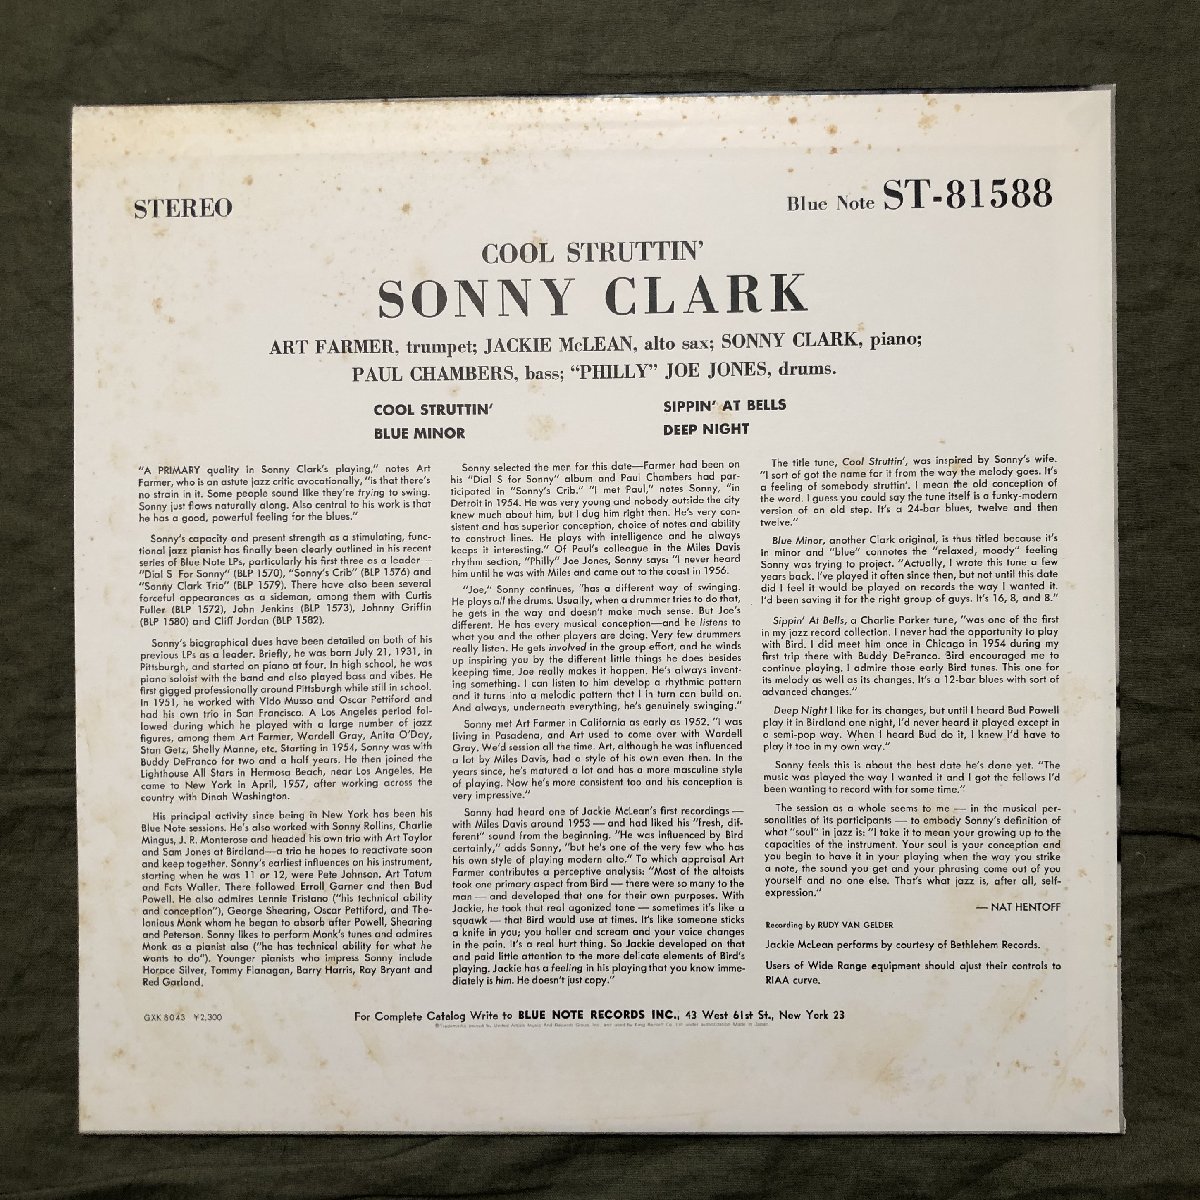 傷なし美盤 1978年 国内盤 ソニー・クラーク Sonny Clark LPレコード Cool Struttin' 名盤 Jackie McLean, Paul Chambers, Art Farmer_画像2